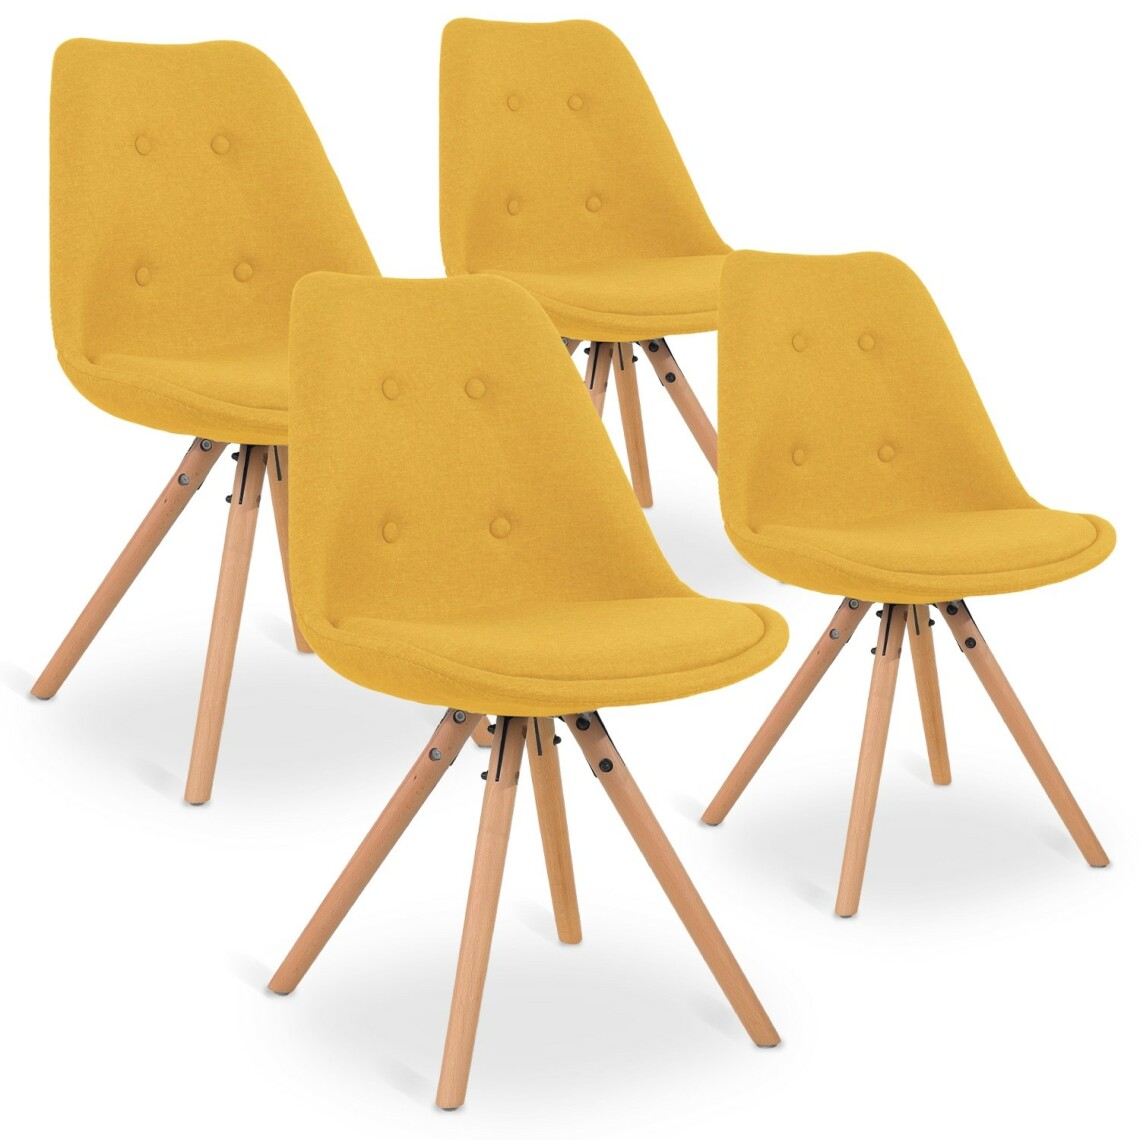 marque generique - Lot de 4 chaises scandinaves Frida tissu Jaune - Chaises